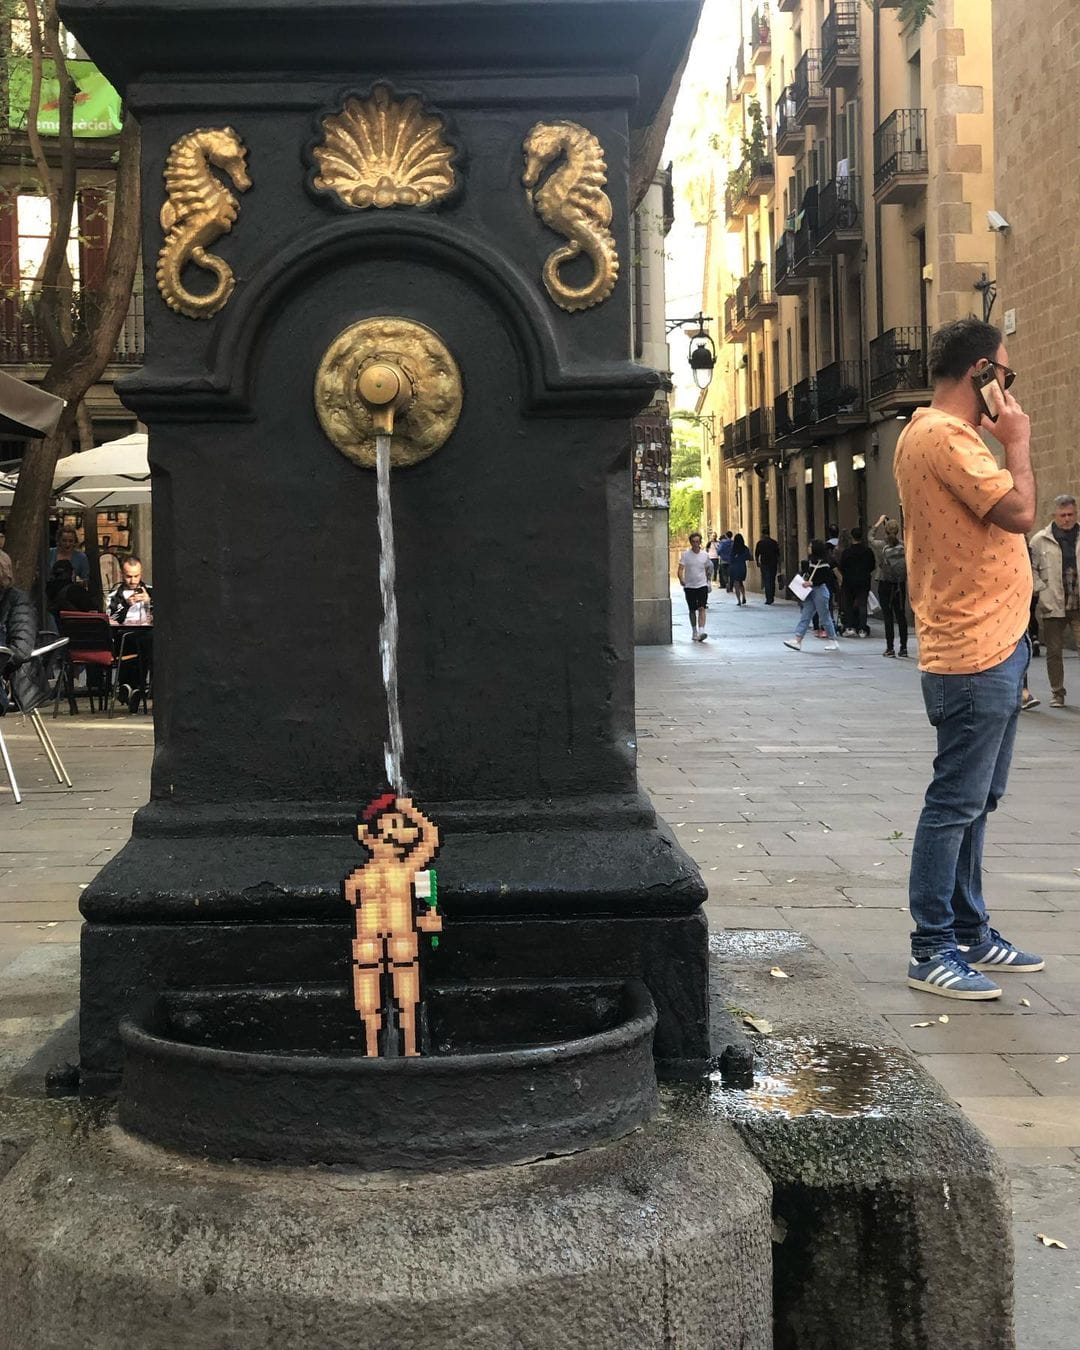 Johan Karlgren : Mario prend sa douche dans une fontaine